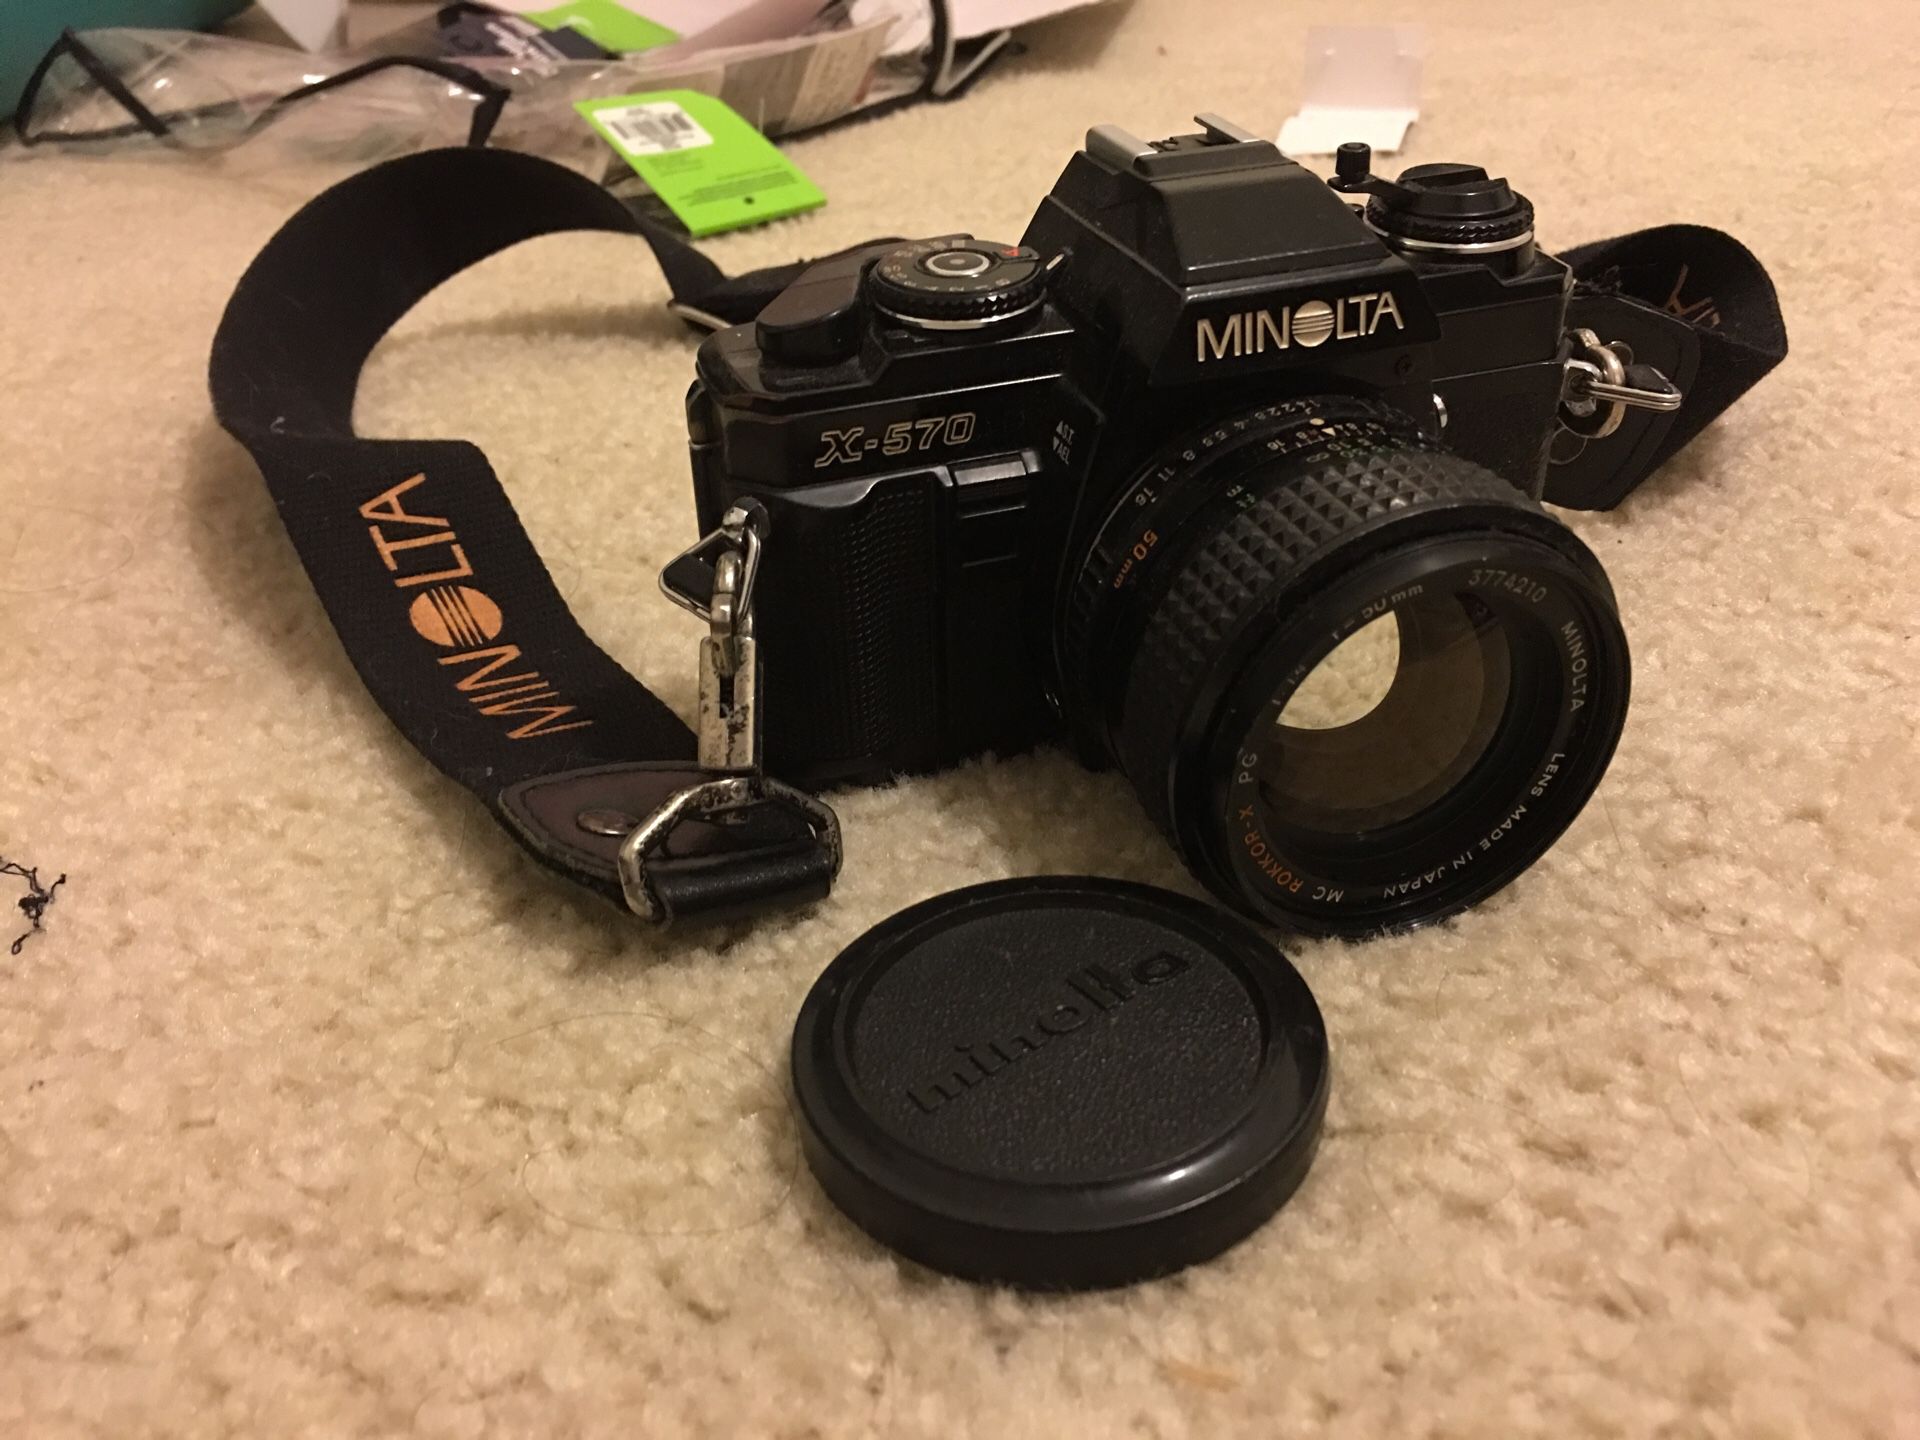 Minolta x-570 film camera